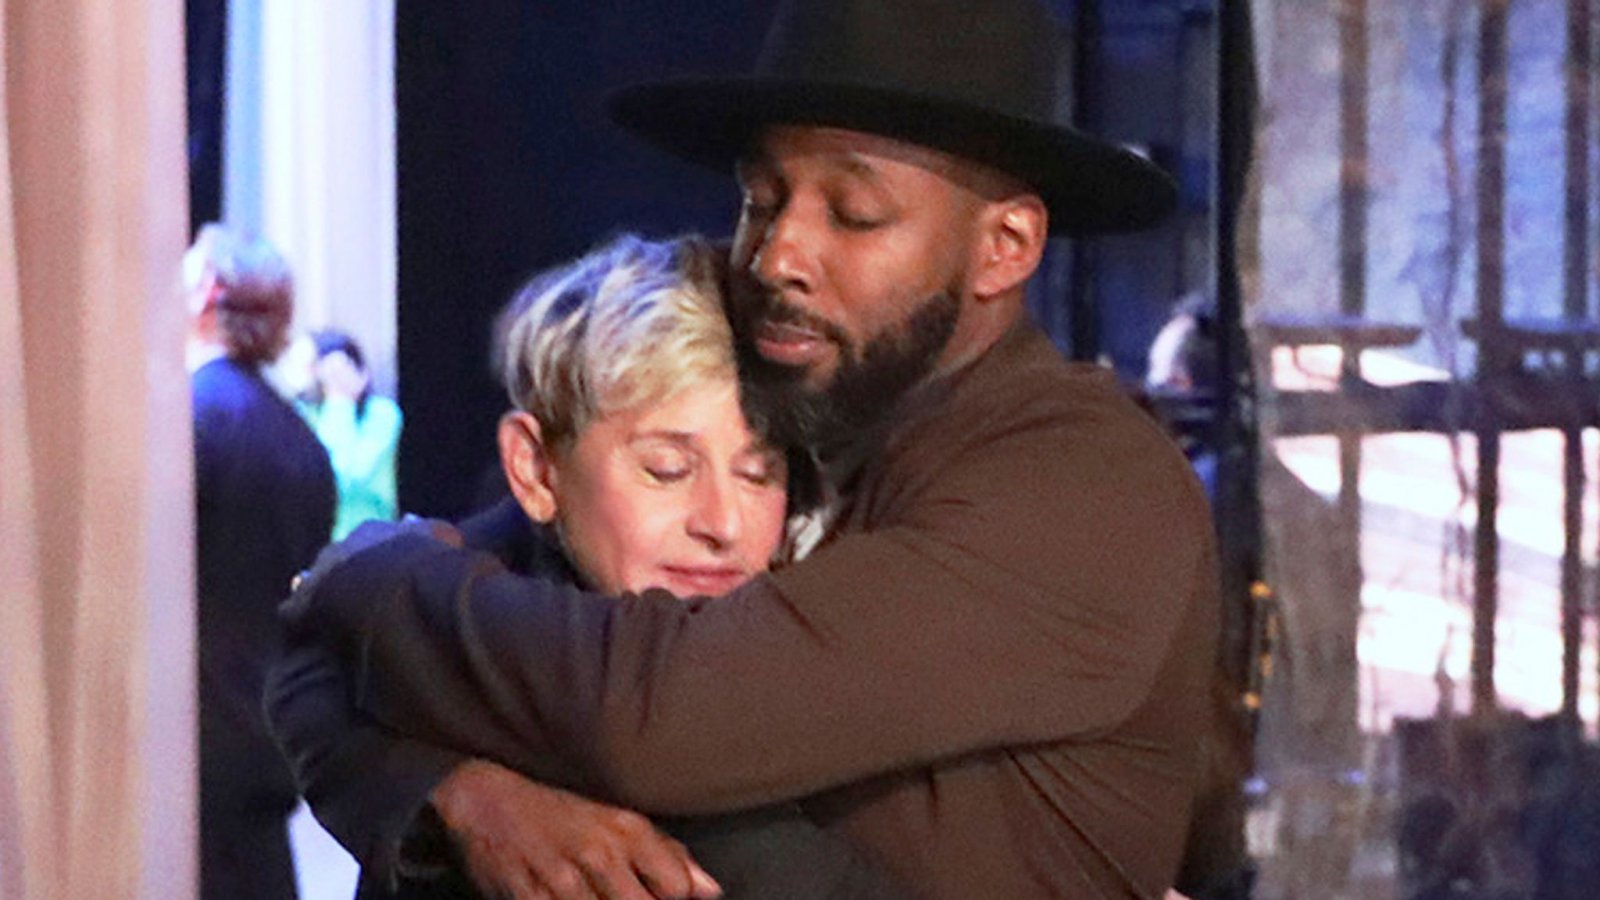 Ellen DeGeneres ricorda Stephen 'tWitch' Boss con un video sui social: 'Stiamo tutti soffrendo'